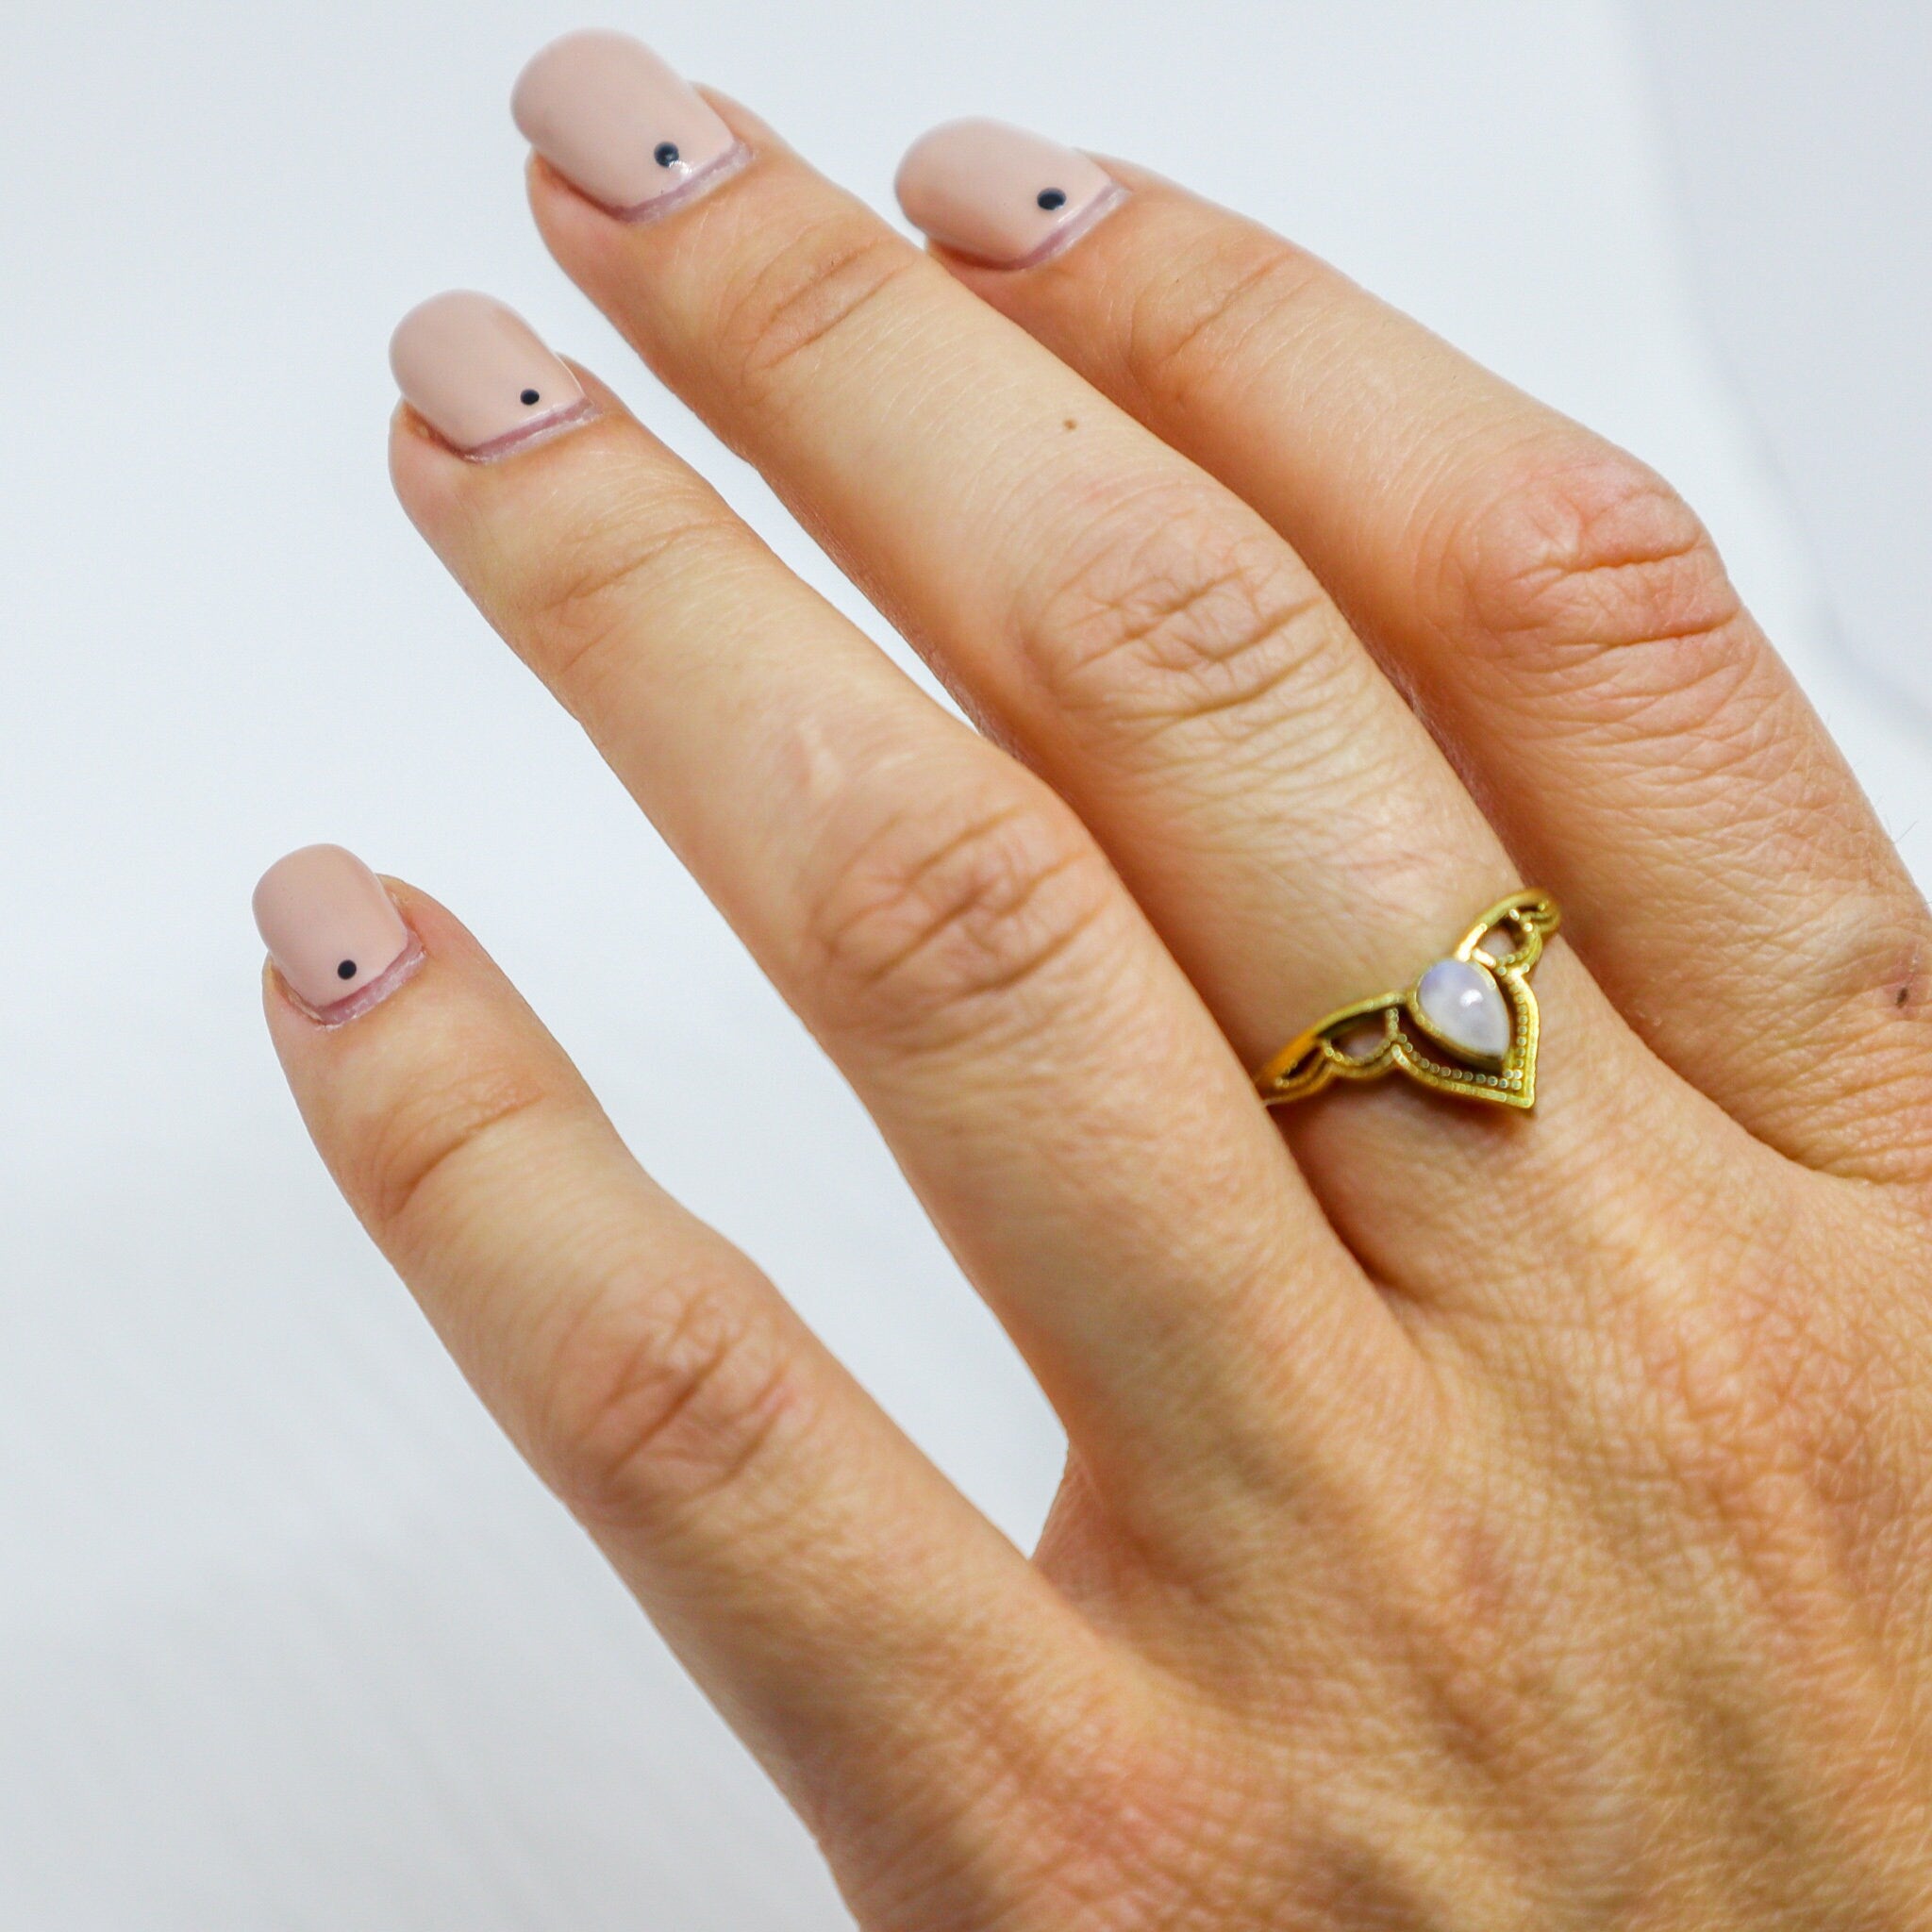 Tiara Kronen Ring mit Mondstein Spitze gold handgemacht